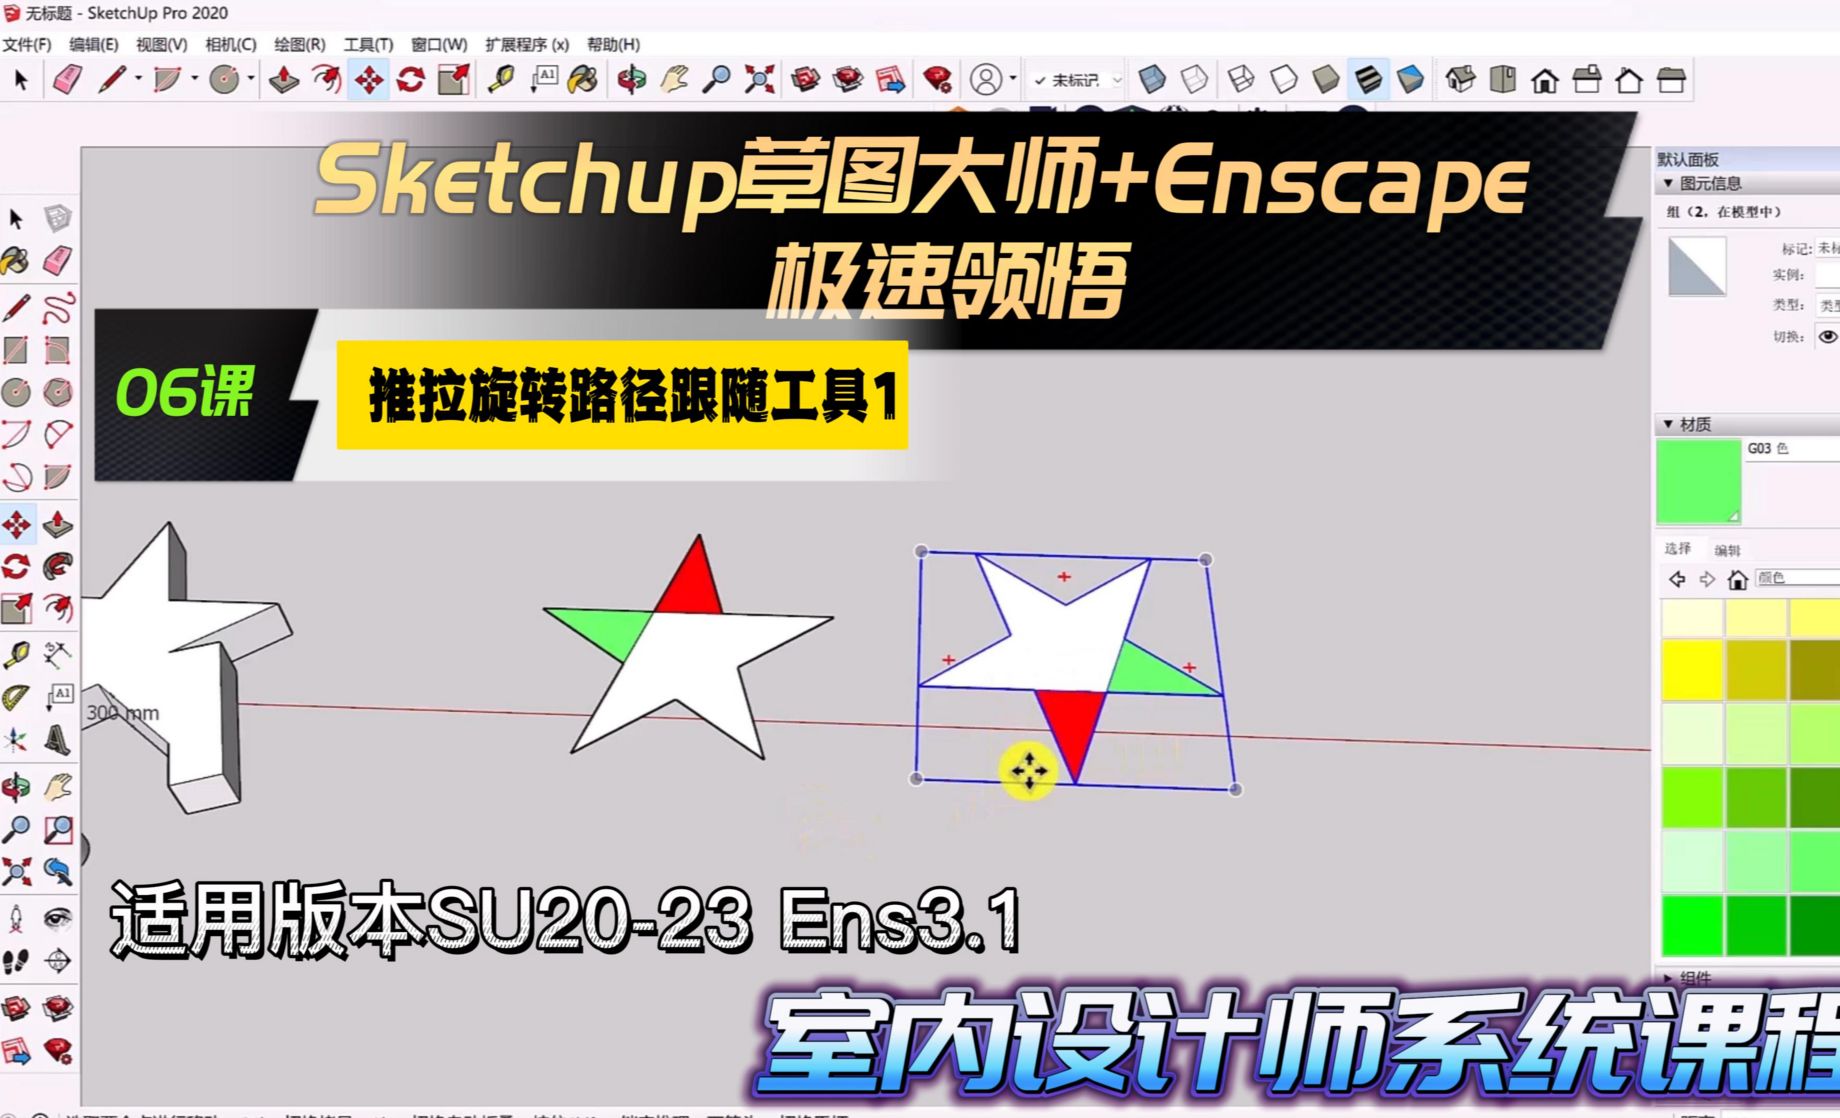 Sketchup+Enscape室内设计极速领悟-推拉/旋转/路径跟随工具1